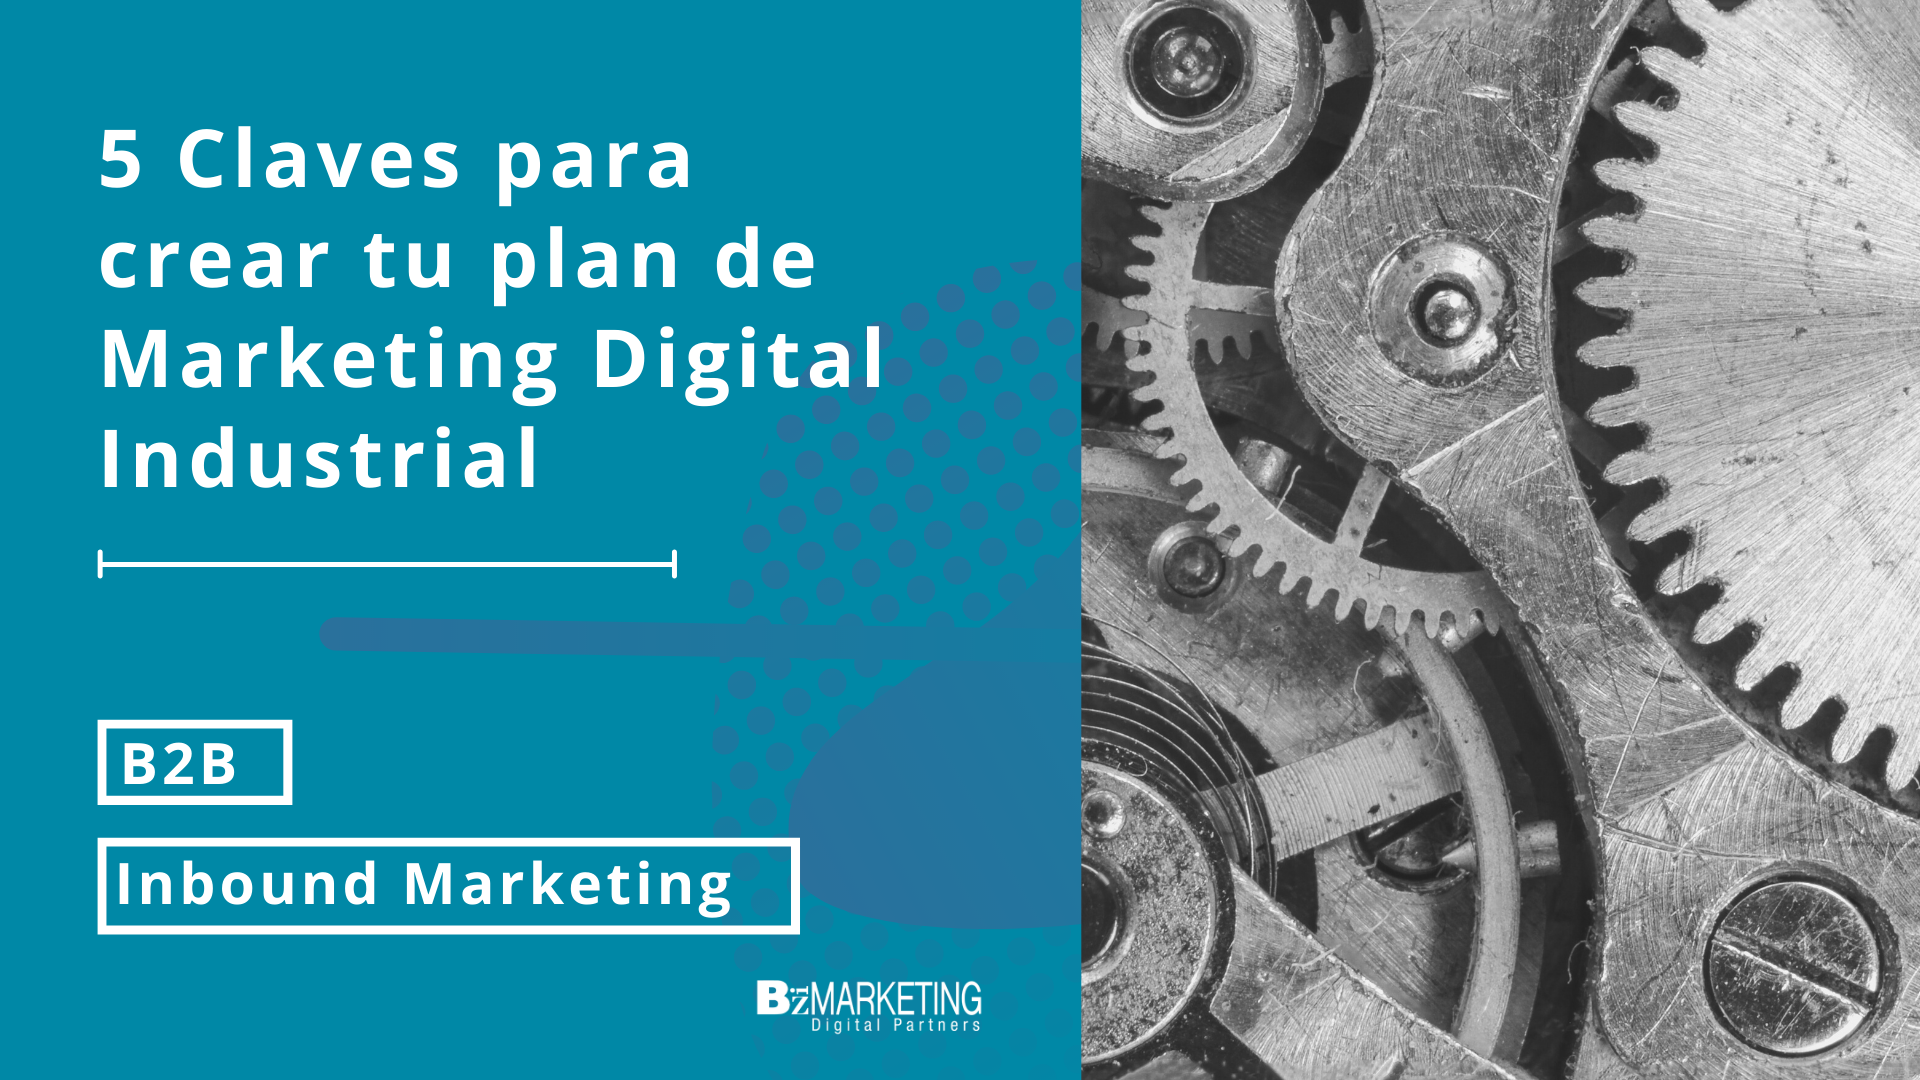 5 claves para crear tu Plan de Marketing Digital Industrial BizMarketing